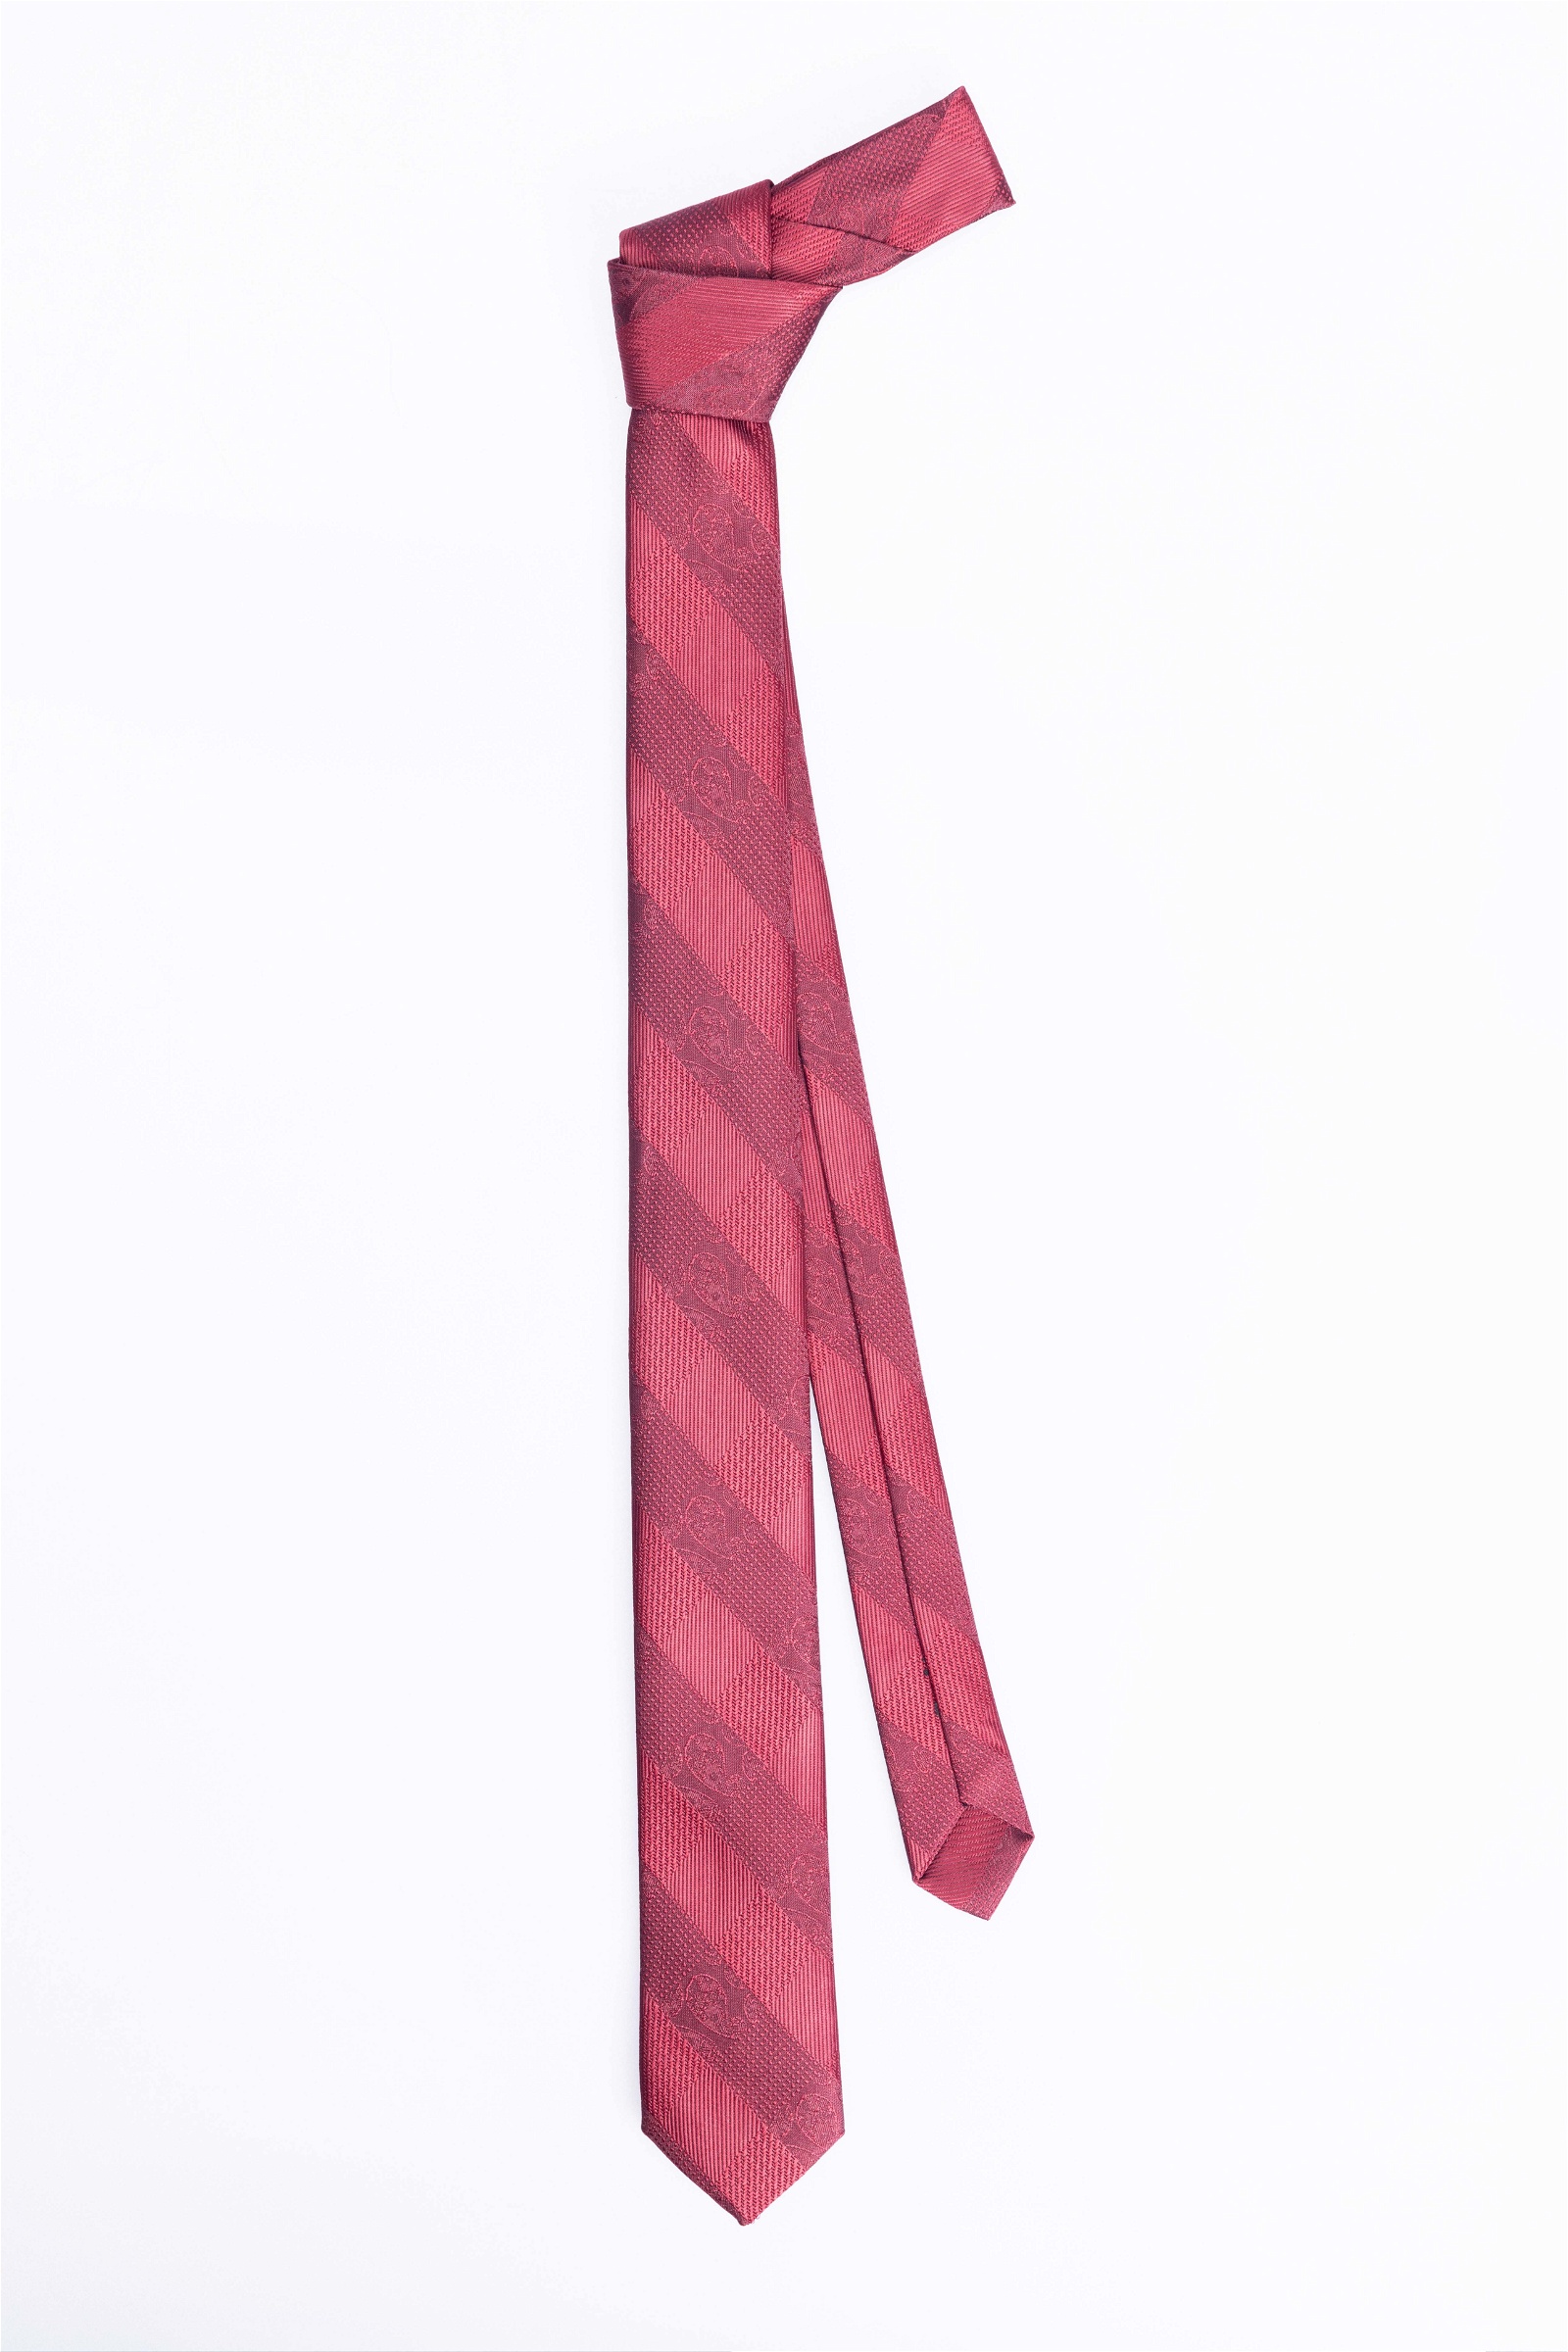   Tie